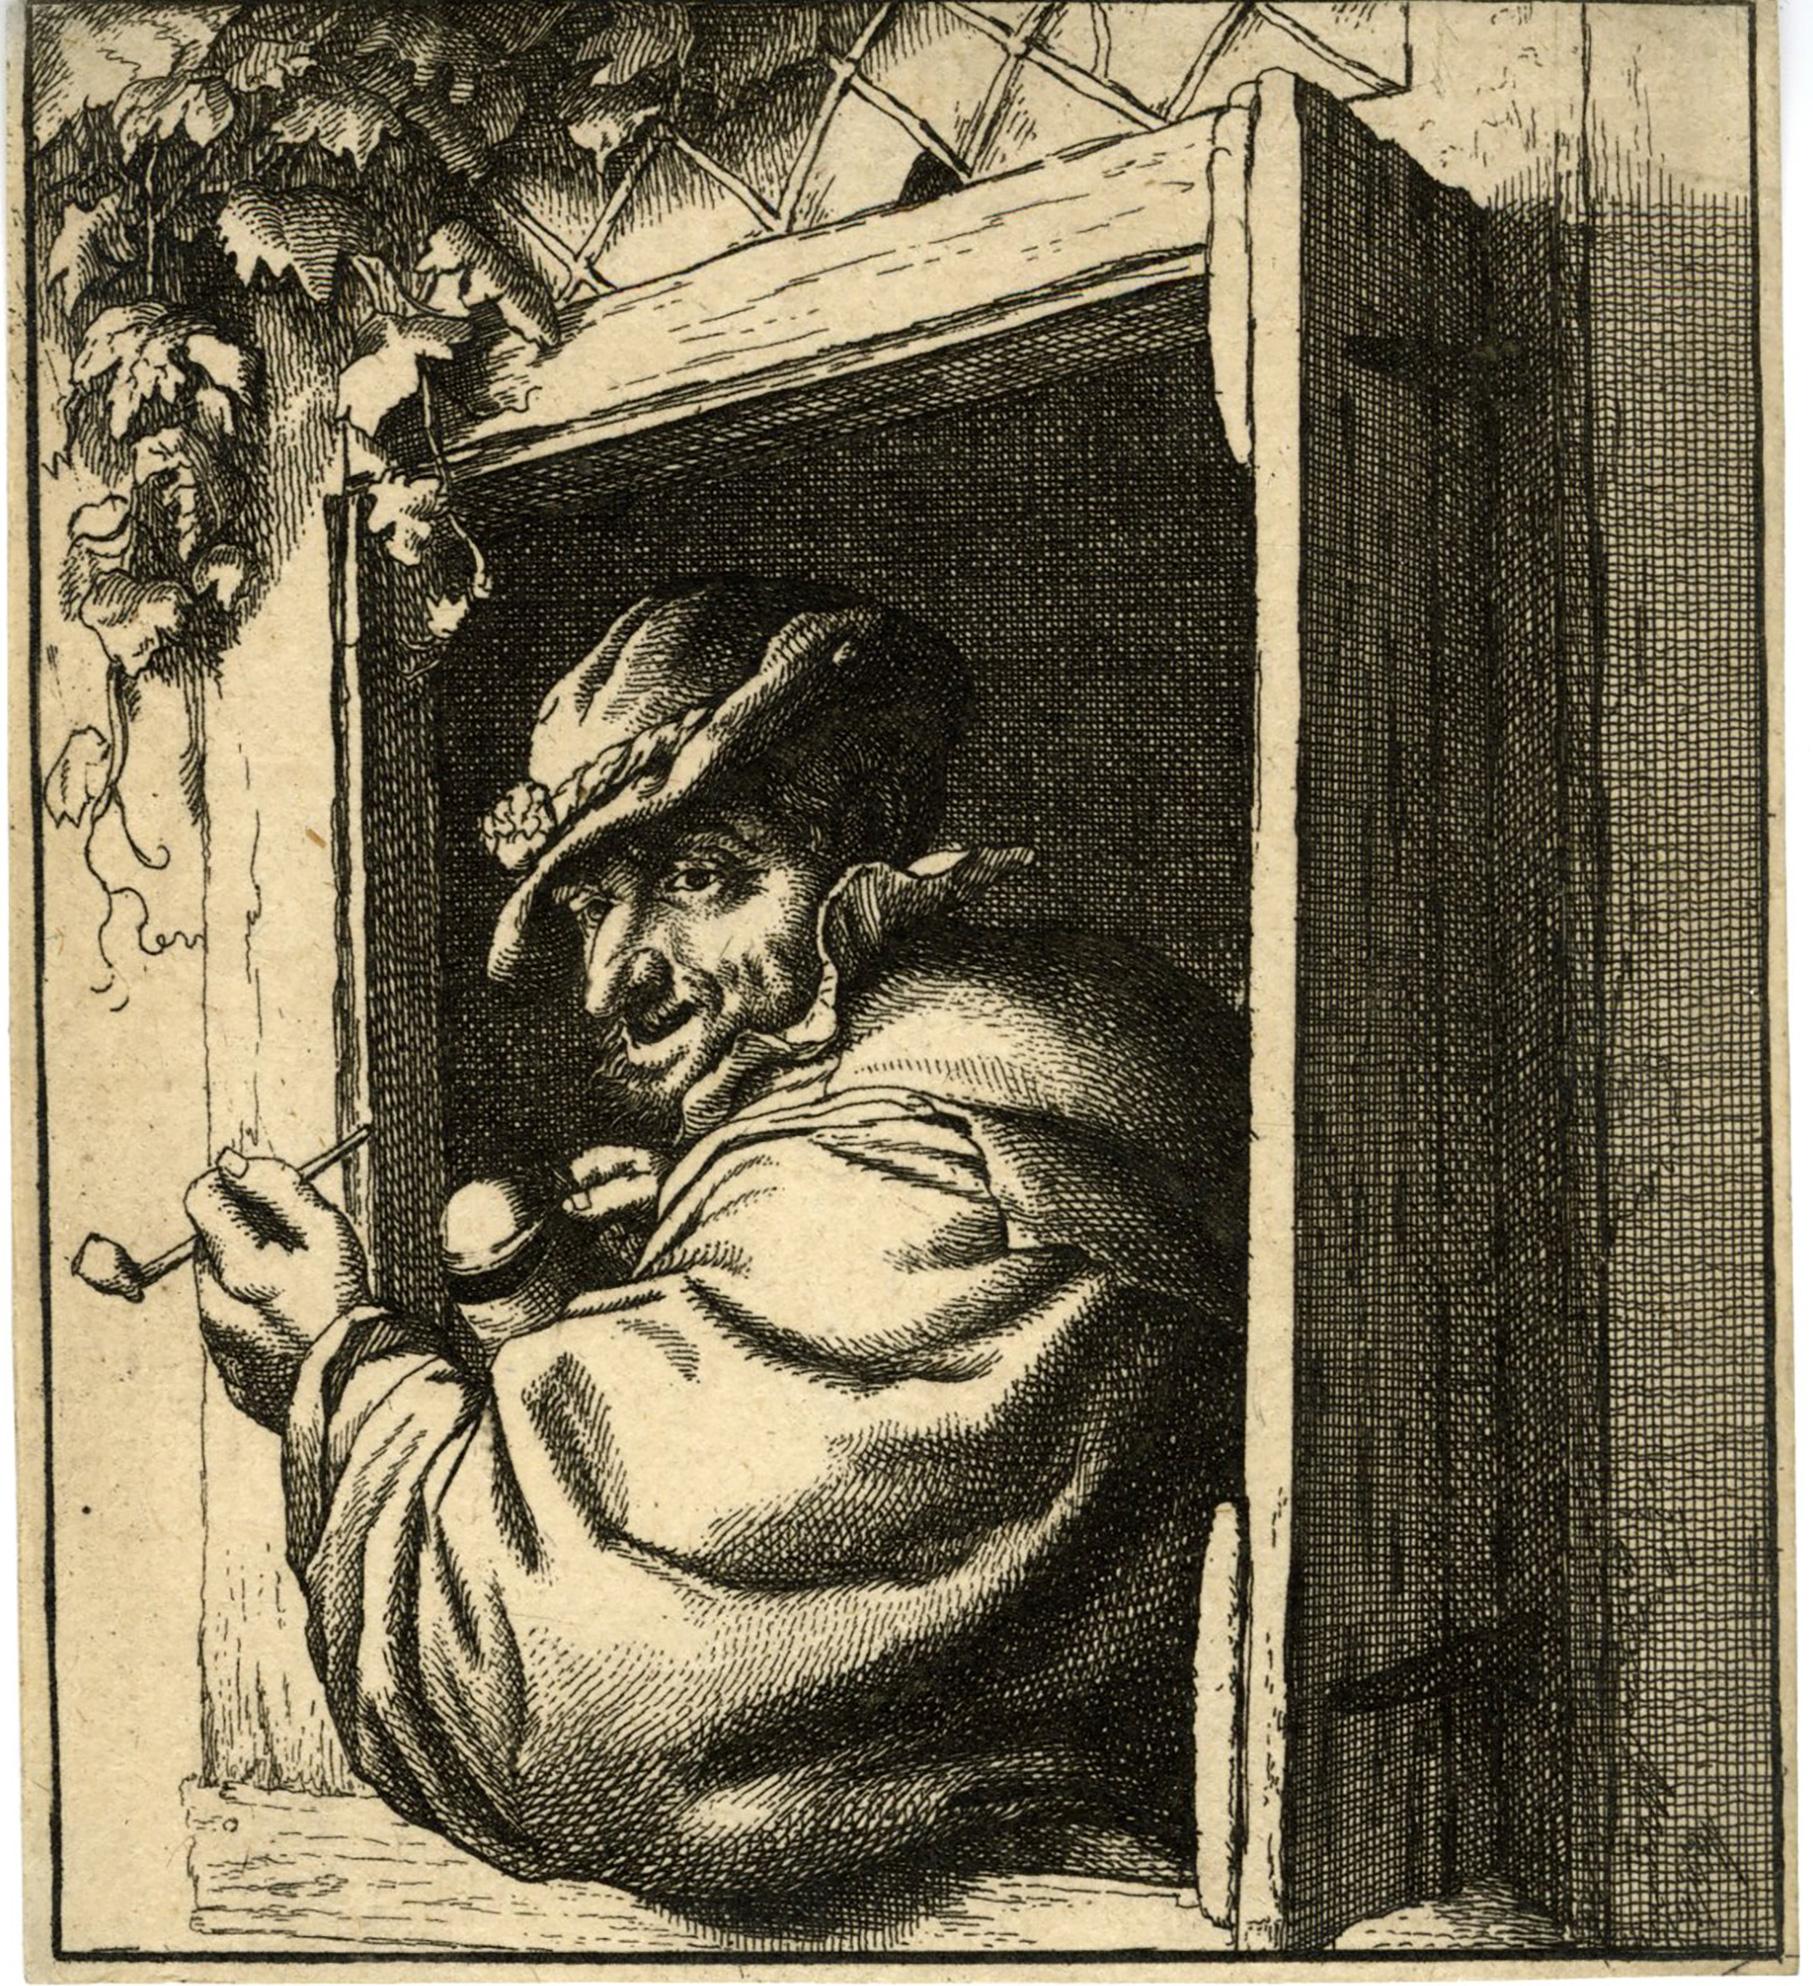 Adriaen van Ostade Portrait Print – The Smoker at the Window von David Deuchar, nach Ostade